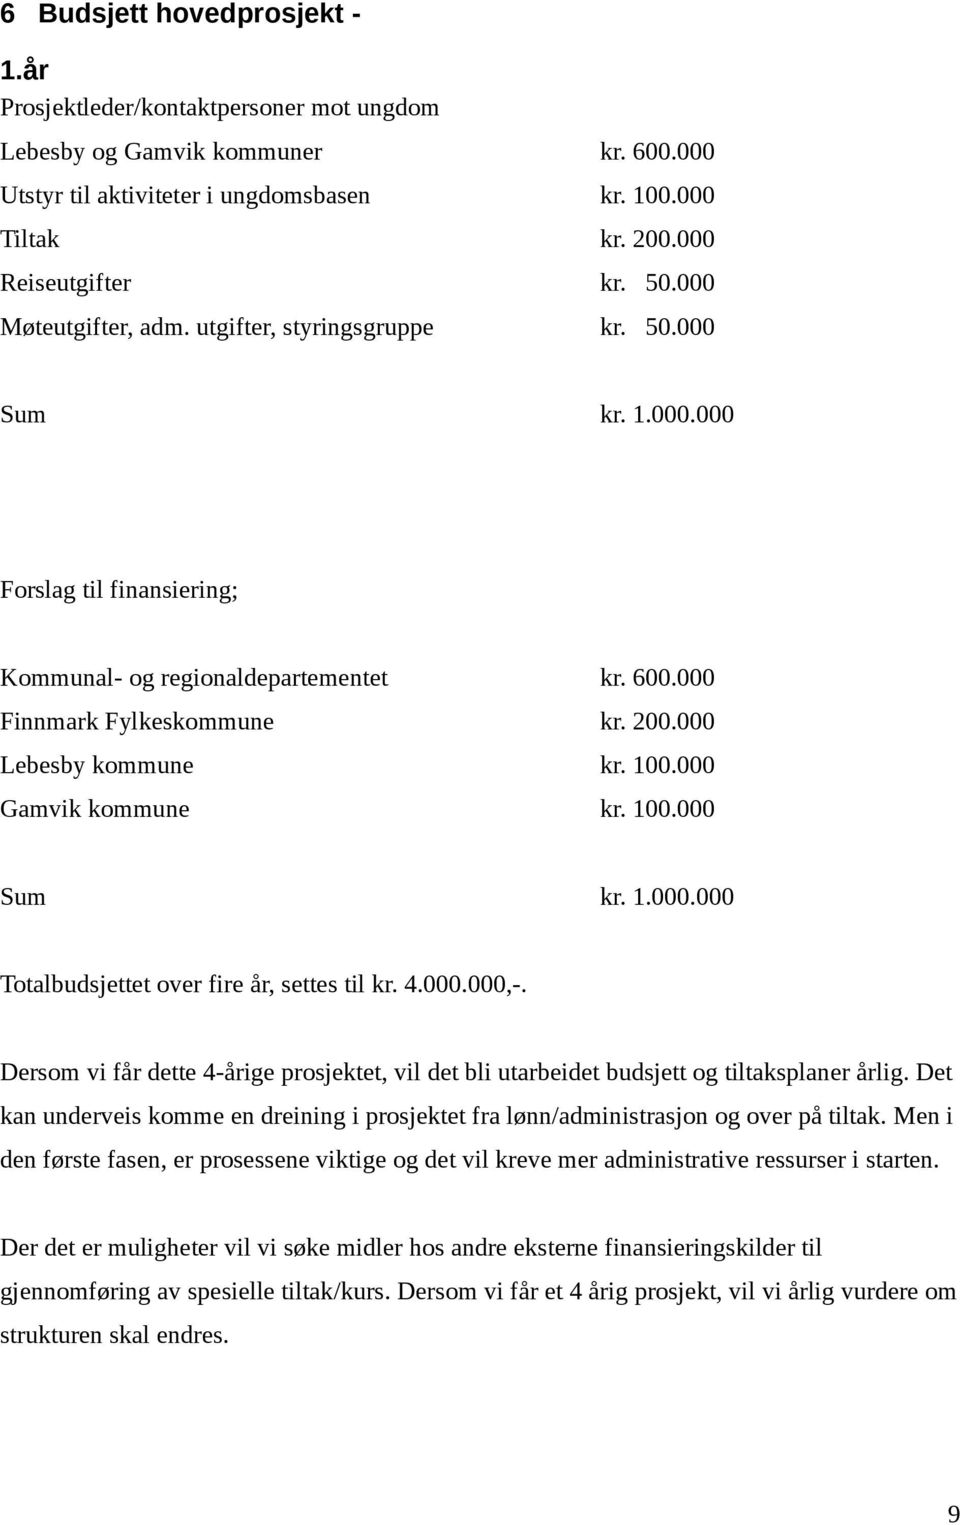 000 Lebesby kommune kr. 100.000 Gamvik kommune kr. 100.000 Sum kr. 1.000.000 Totalbudsjettet over fire år, settes til kr. 4.000.000,-.